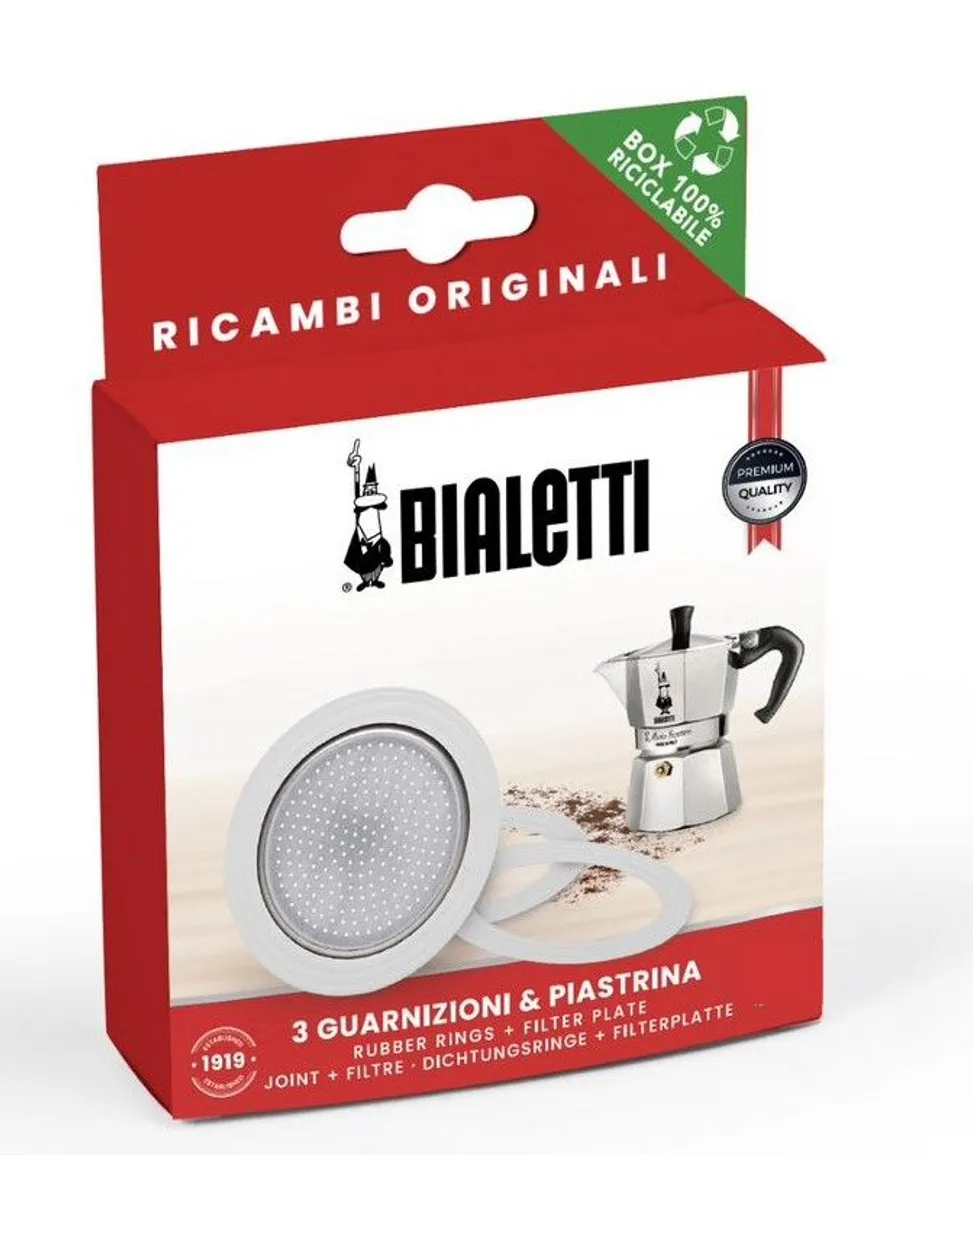 Rubberen ring en filter voor 9 kops Bialetti espressomaker